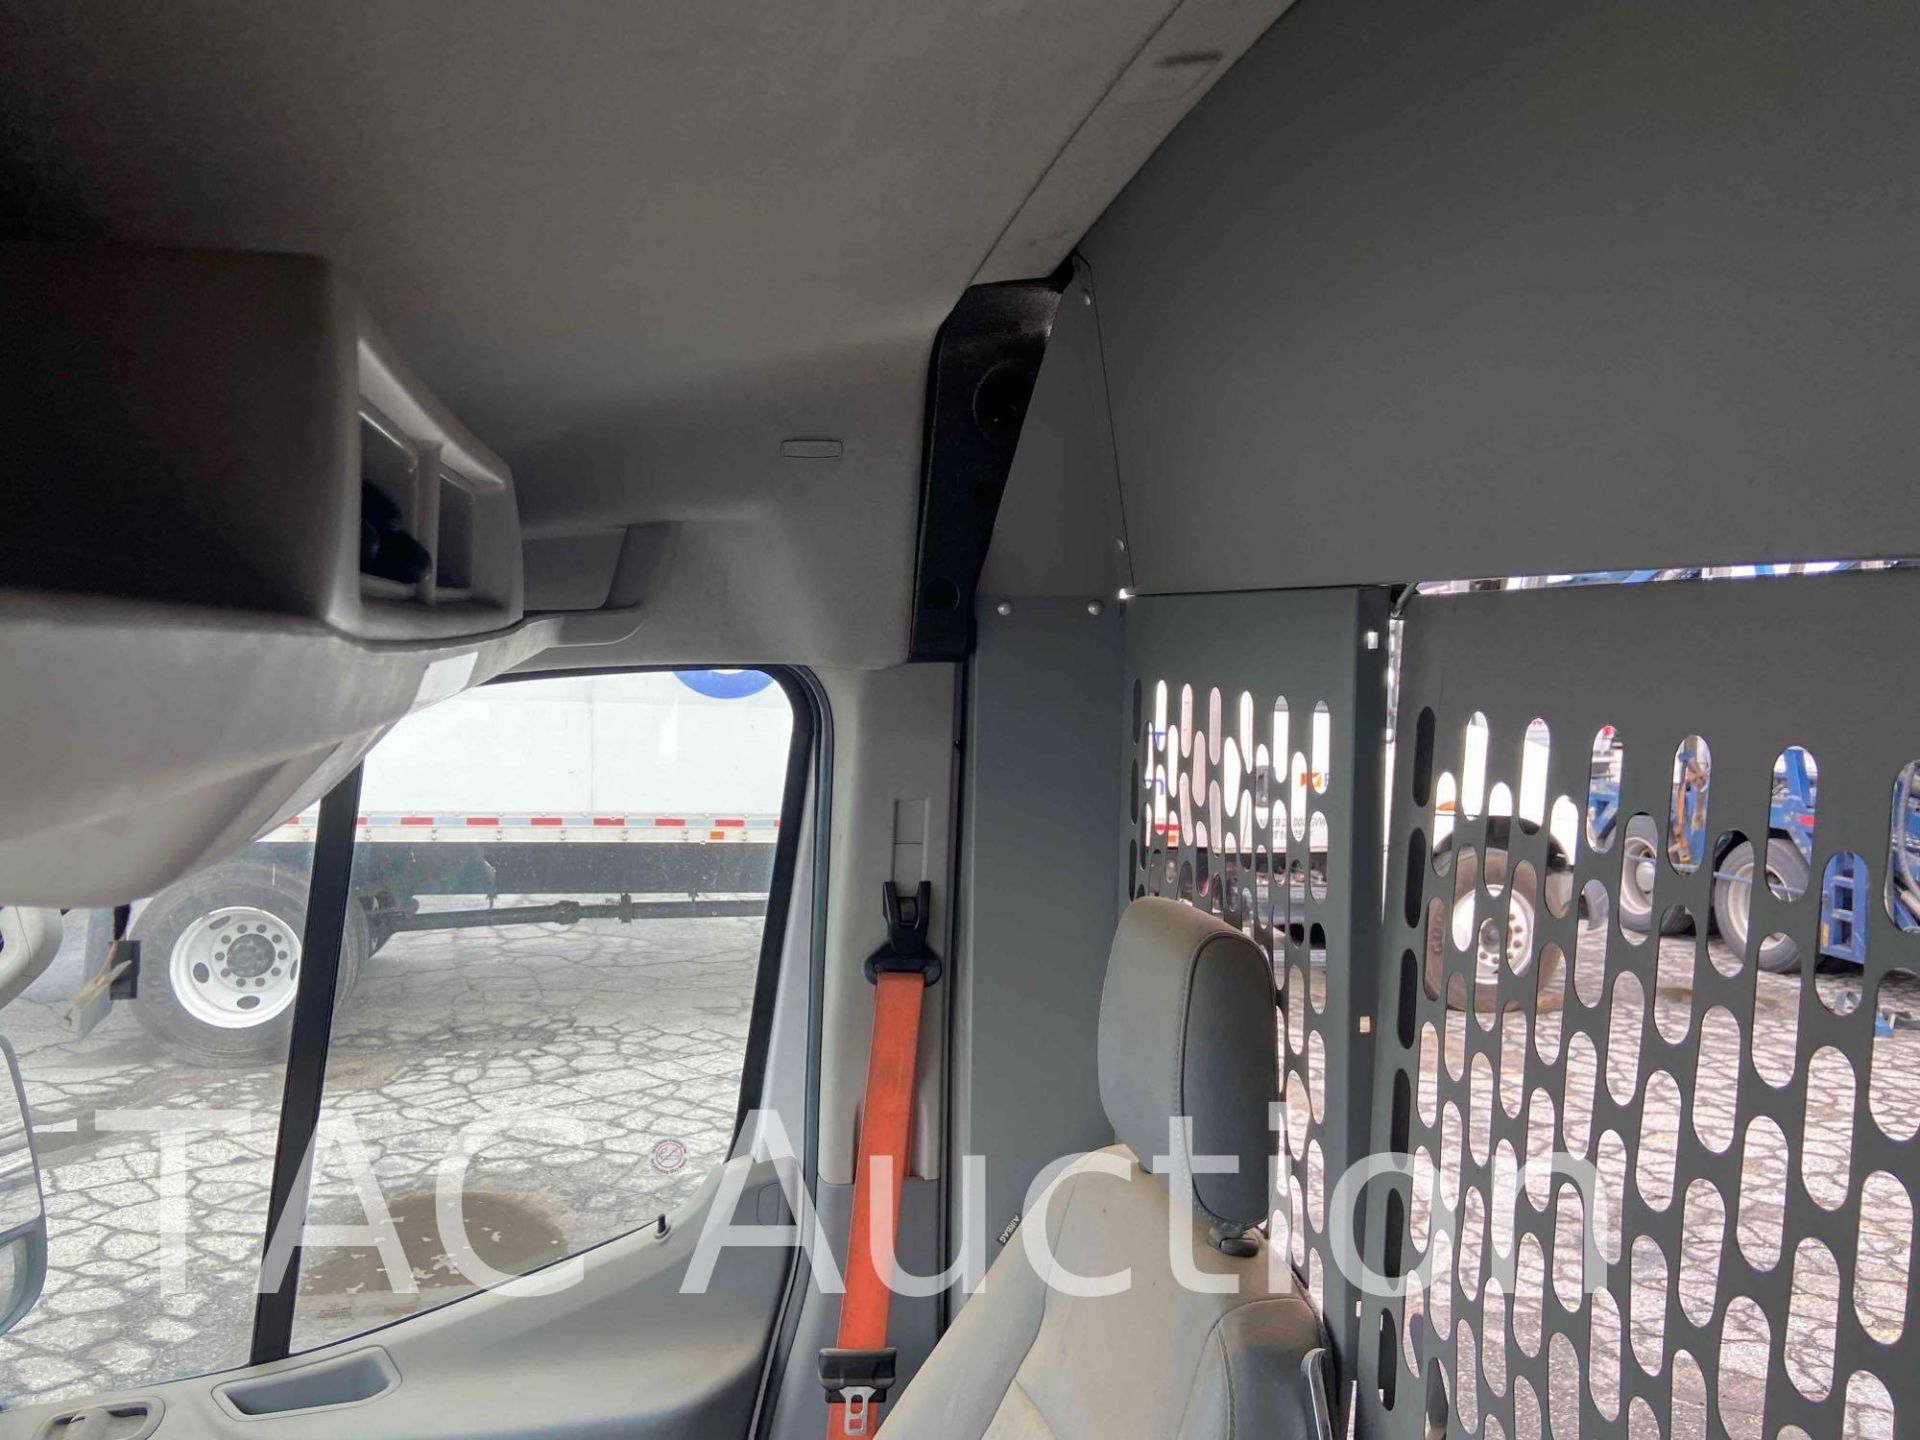 2017 Ford Transit 150 Cargo Van - Image 12 of 86